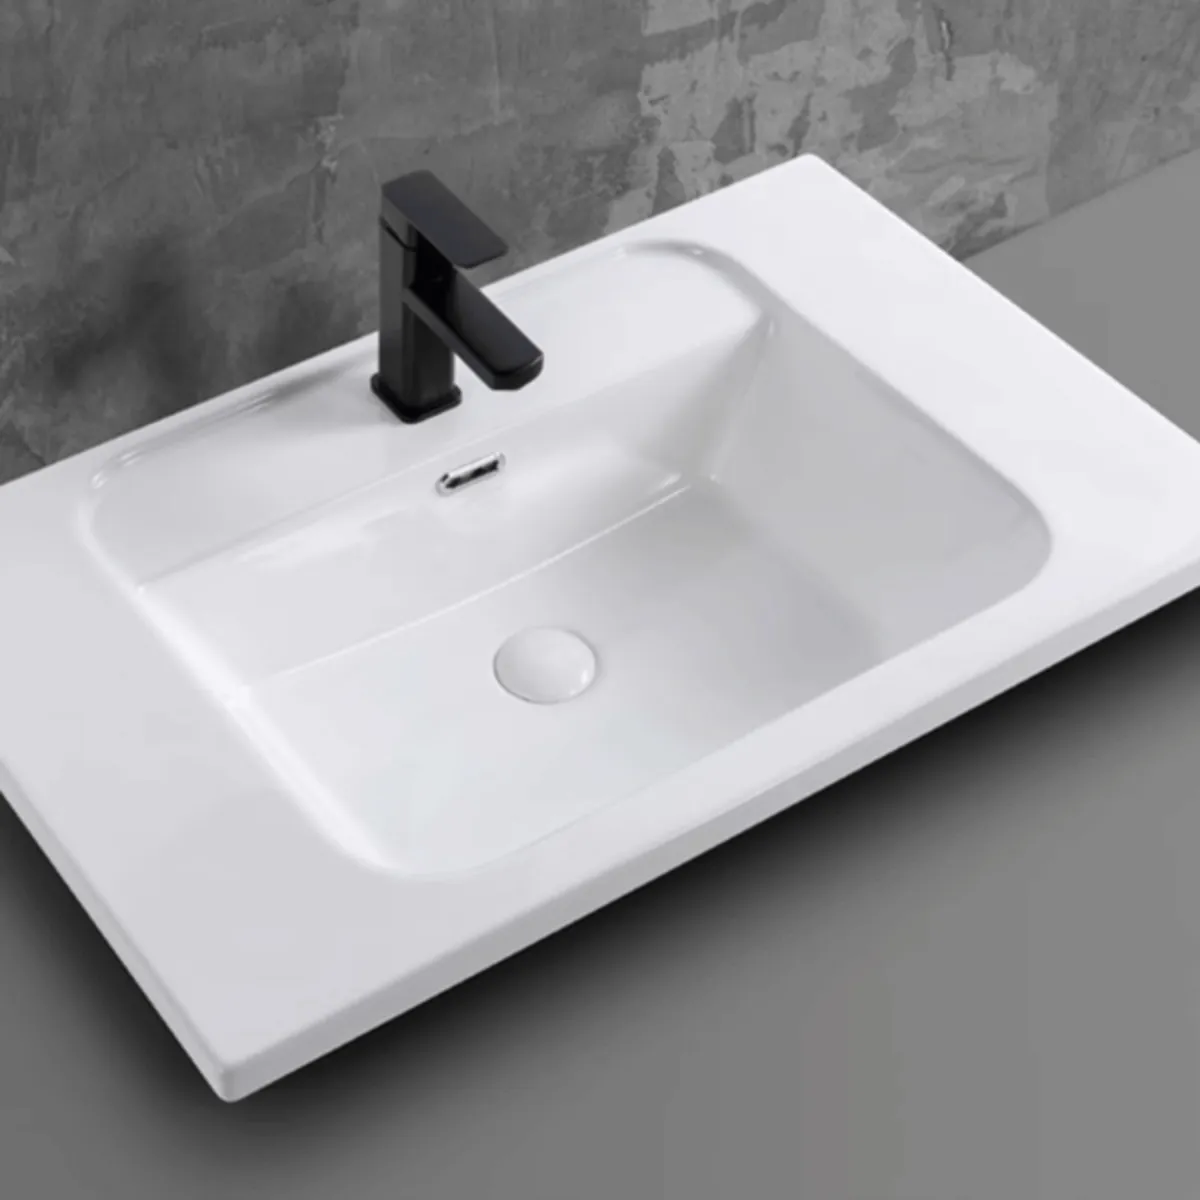 Chậu rửa lavabo âm bàn Palado – Sự kết hợp hoàn hảo giữa chất lượng và thiết kế.